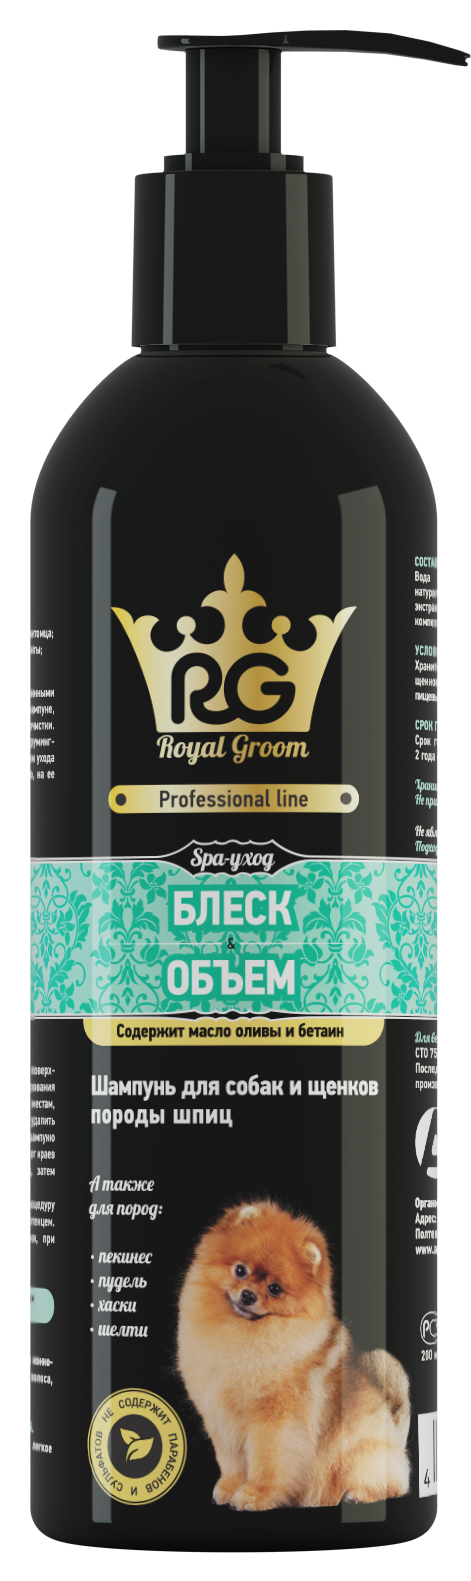 Royal Groom шампунь для собак и щенков пород: шпиц, пекинес, пудель, хаски, шелти